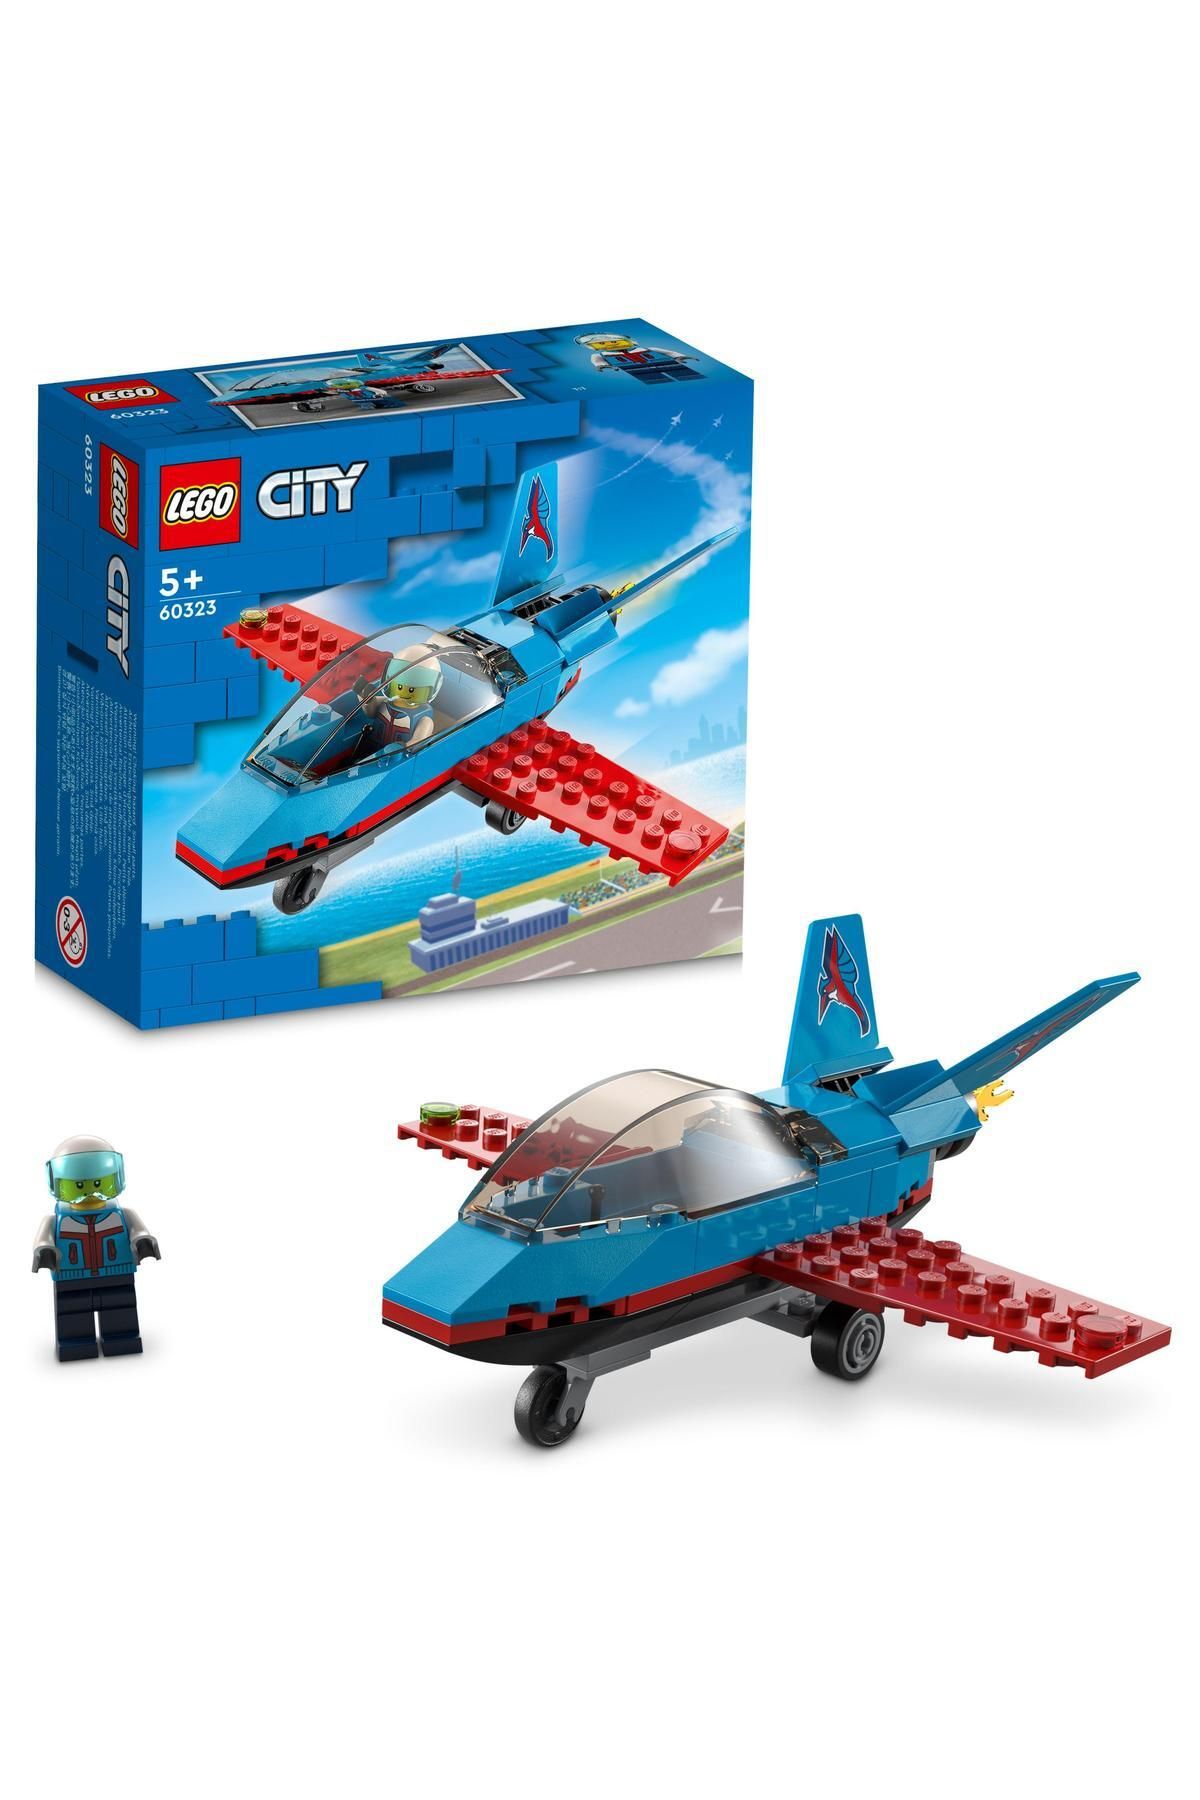 LEGO ® City Gösteri Uçağı 60323 - 5 Yaş ve Üzeri Çocuklar için Oyuncak Jet Yapım Seti (59 Parça)